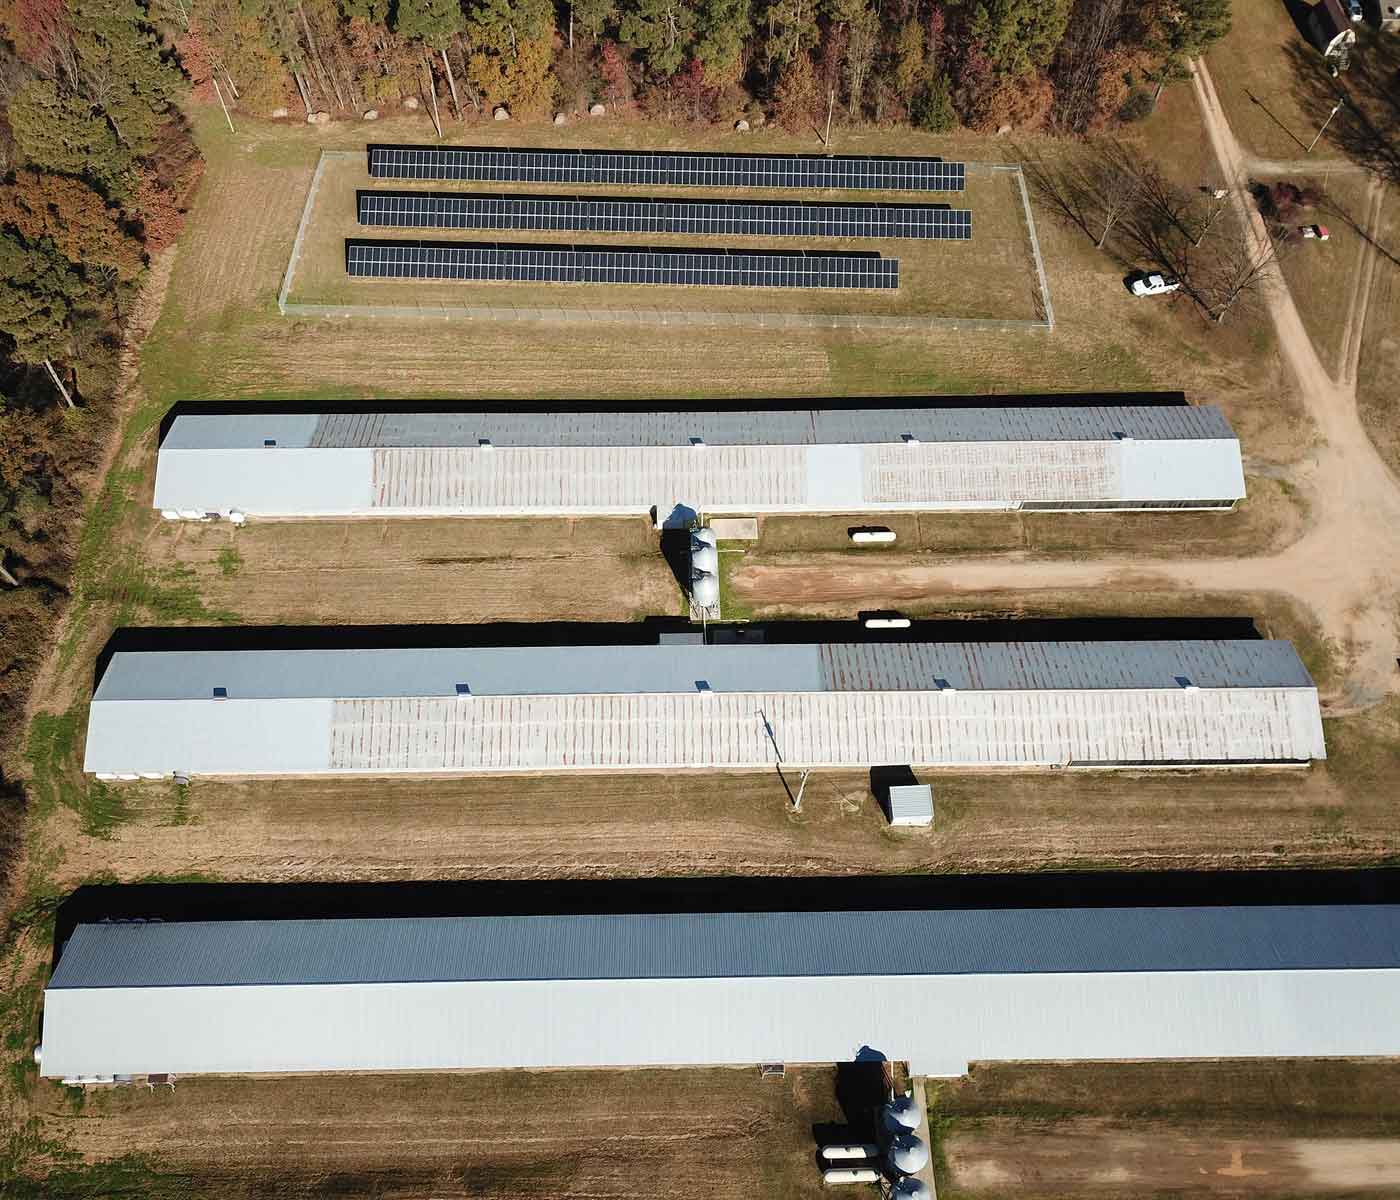 ستسمح تكنولوجيا الطاقة الشمسية بخفض التكاليف في مزارع الدواجن